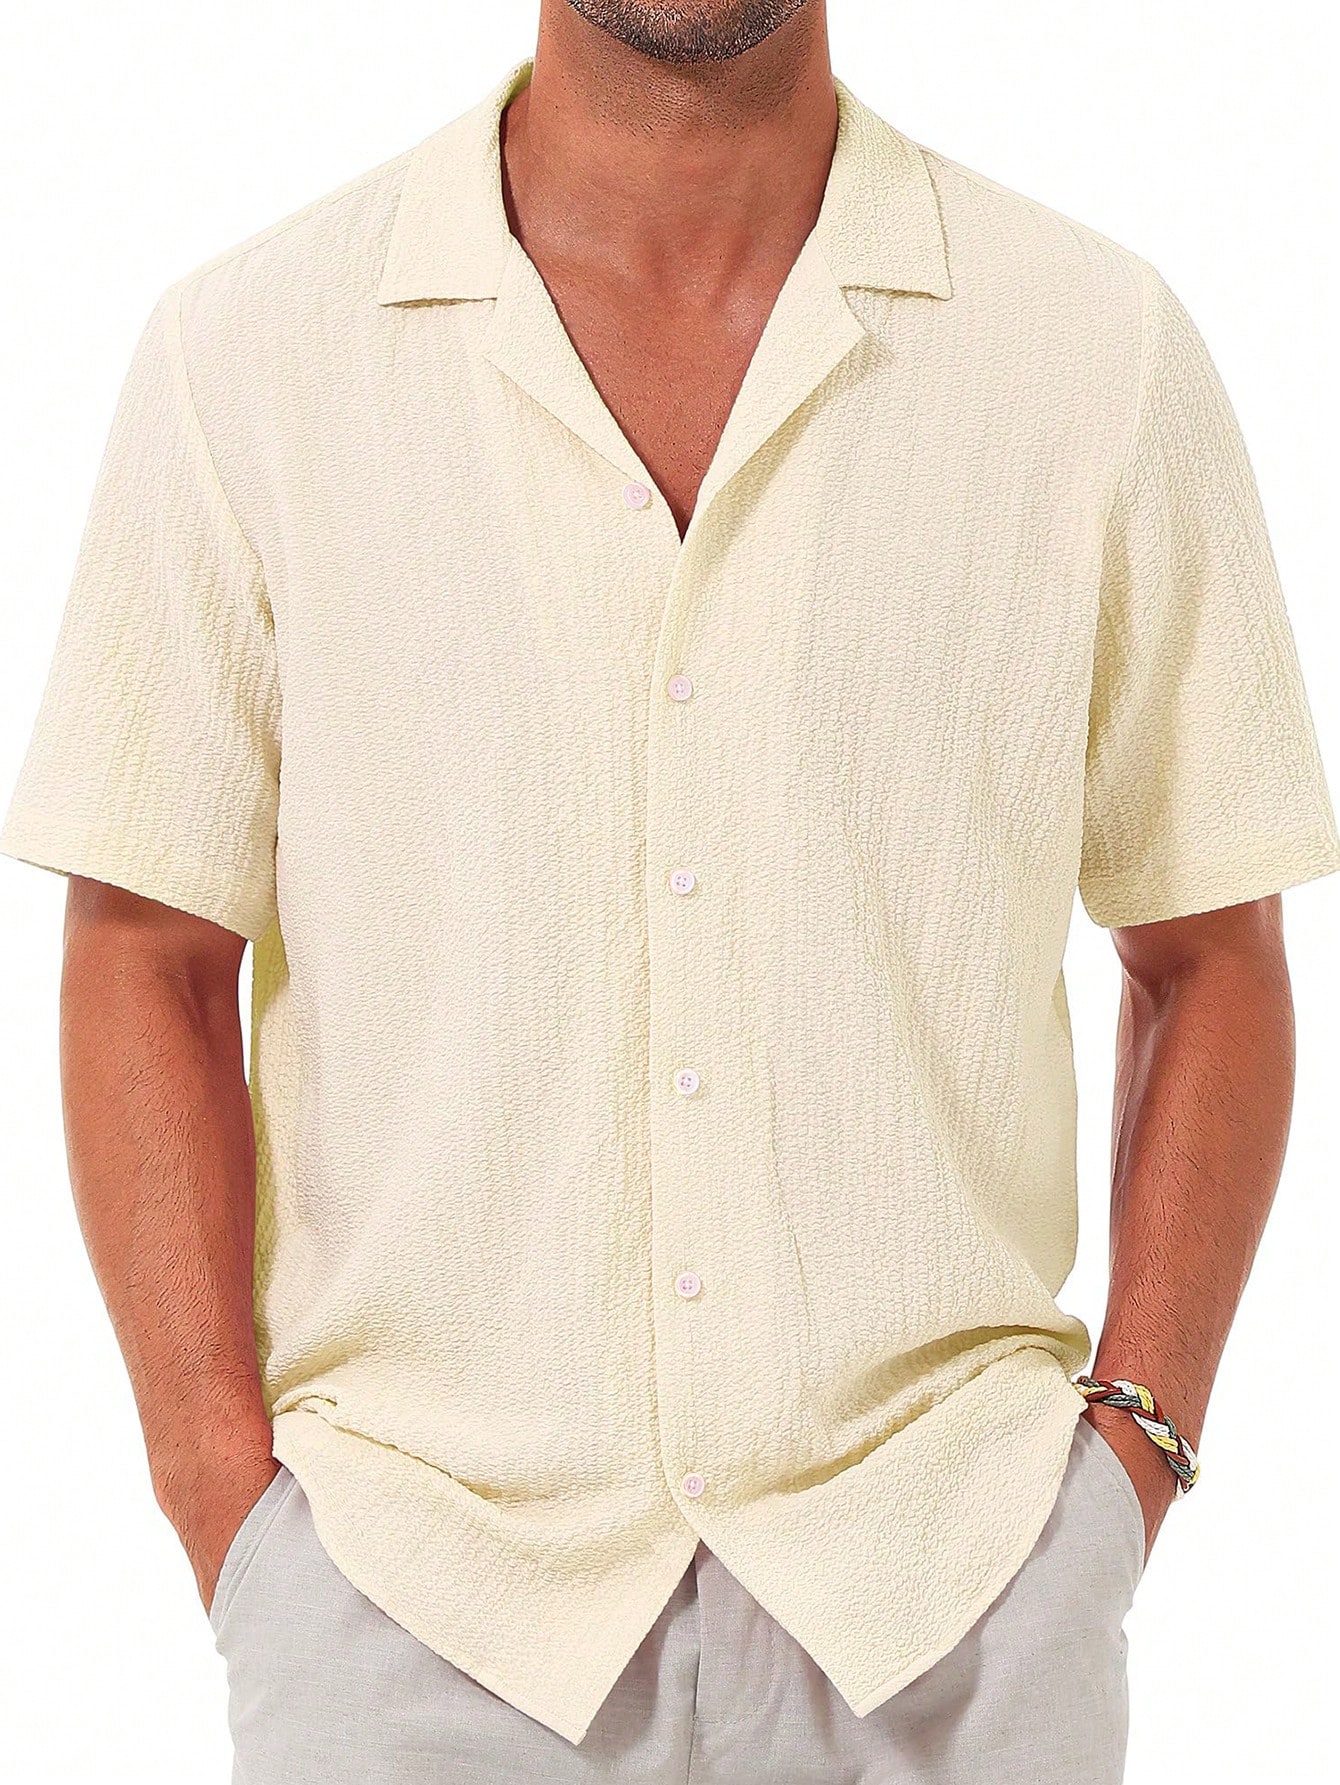 Мужская повседневная рубашка с коротким рукавом на пуговицах, бежевый махровая пляжная рубашка h